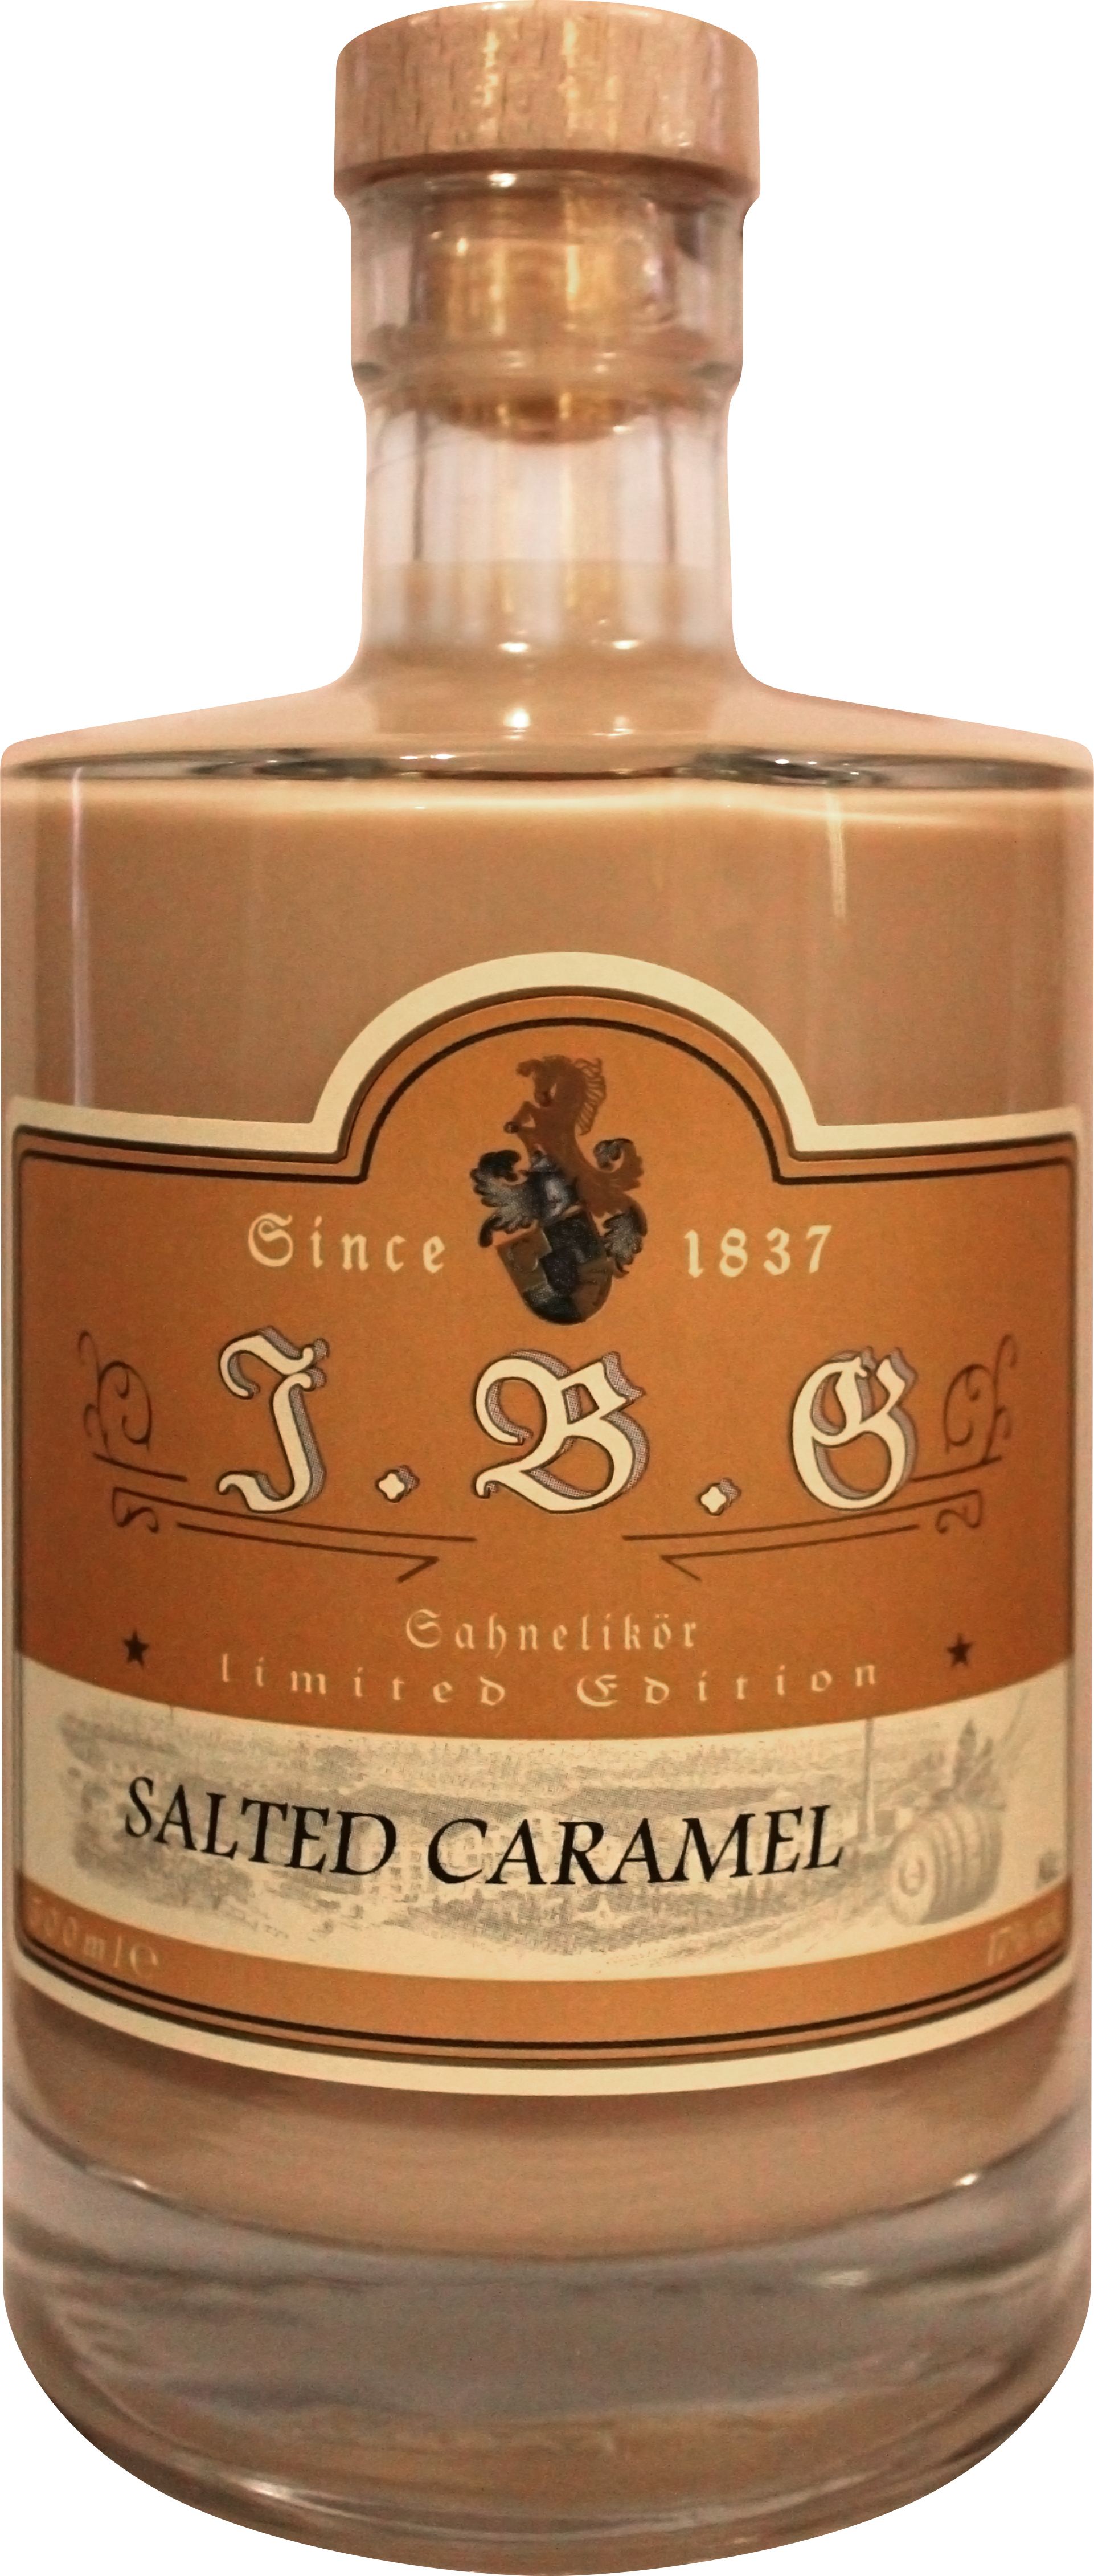 Salted Caramel Sahnelikör ltr. | 0,5 Geuting 17%vol., Gutsbrennerei